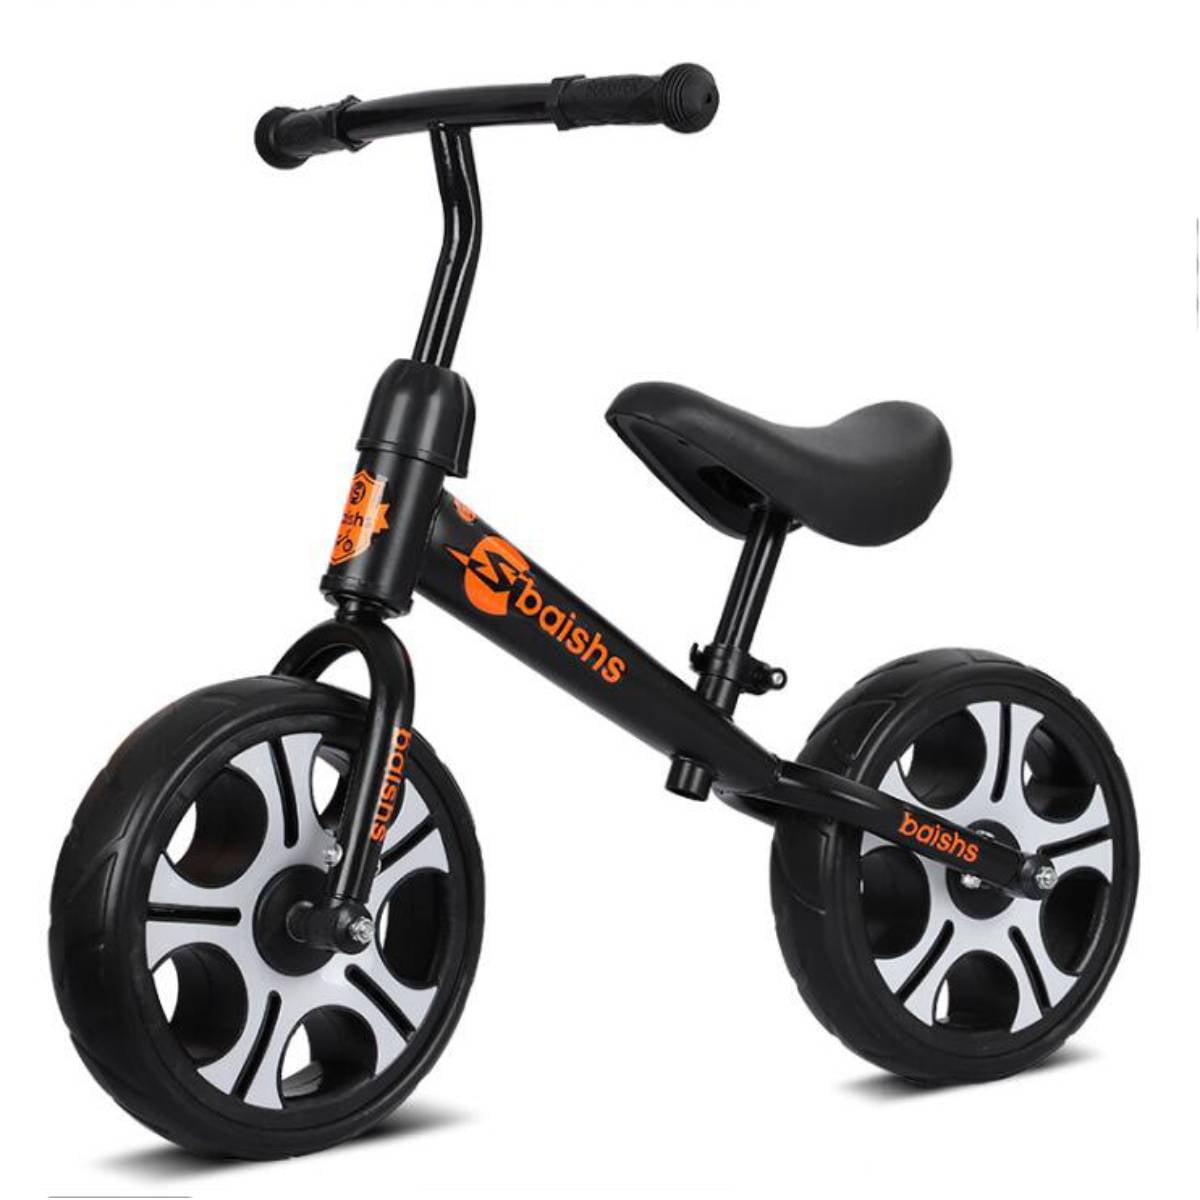 Kids Balance Bike No Pedal Toddler Bicycle Adjustable Seat Walking Training Gift 